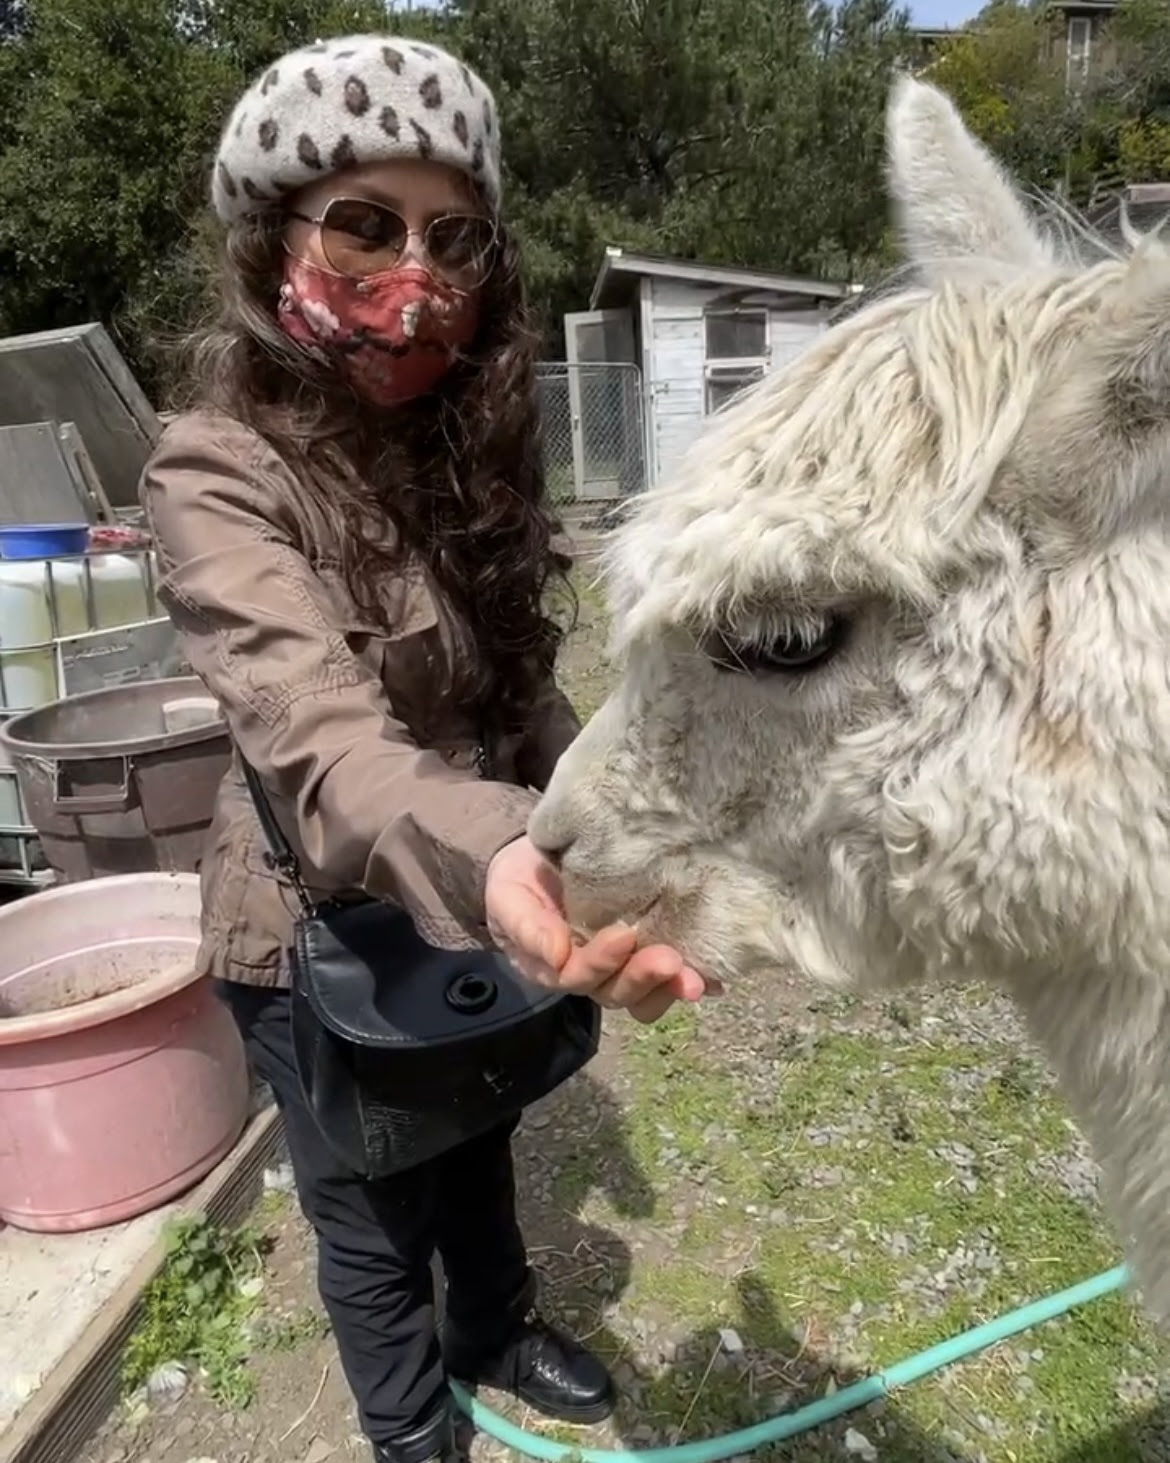 My mom feeding a llama